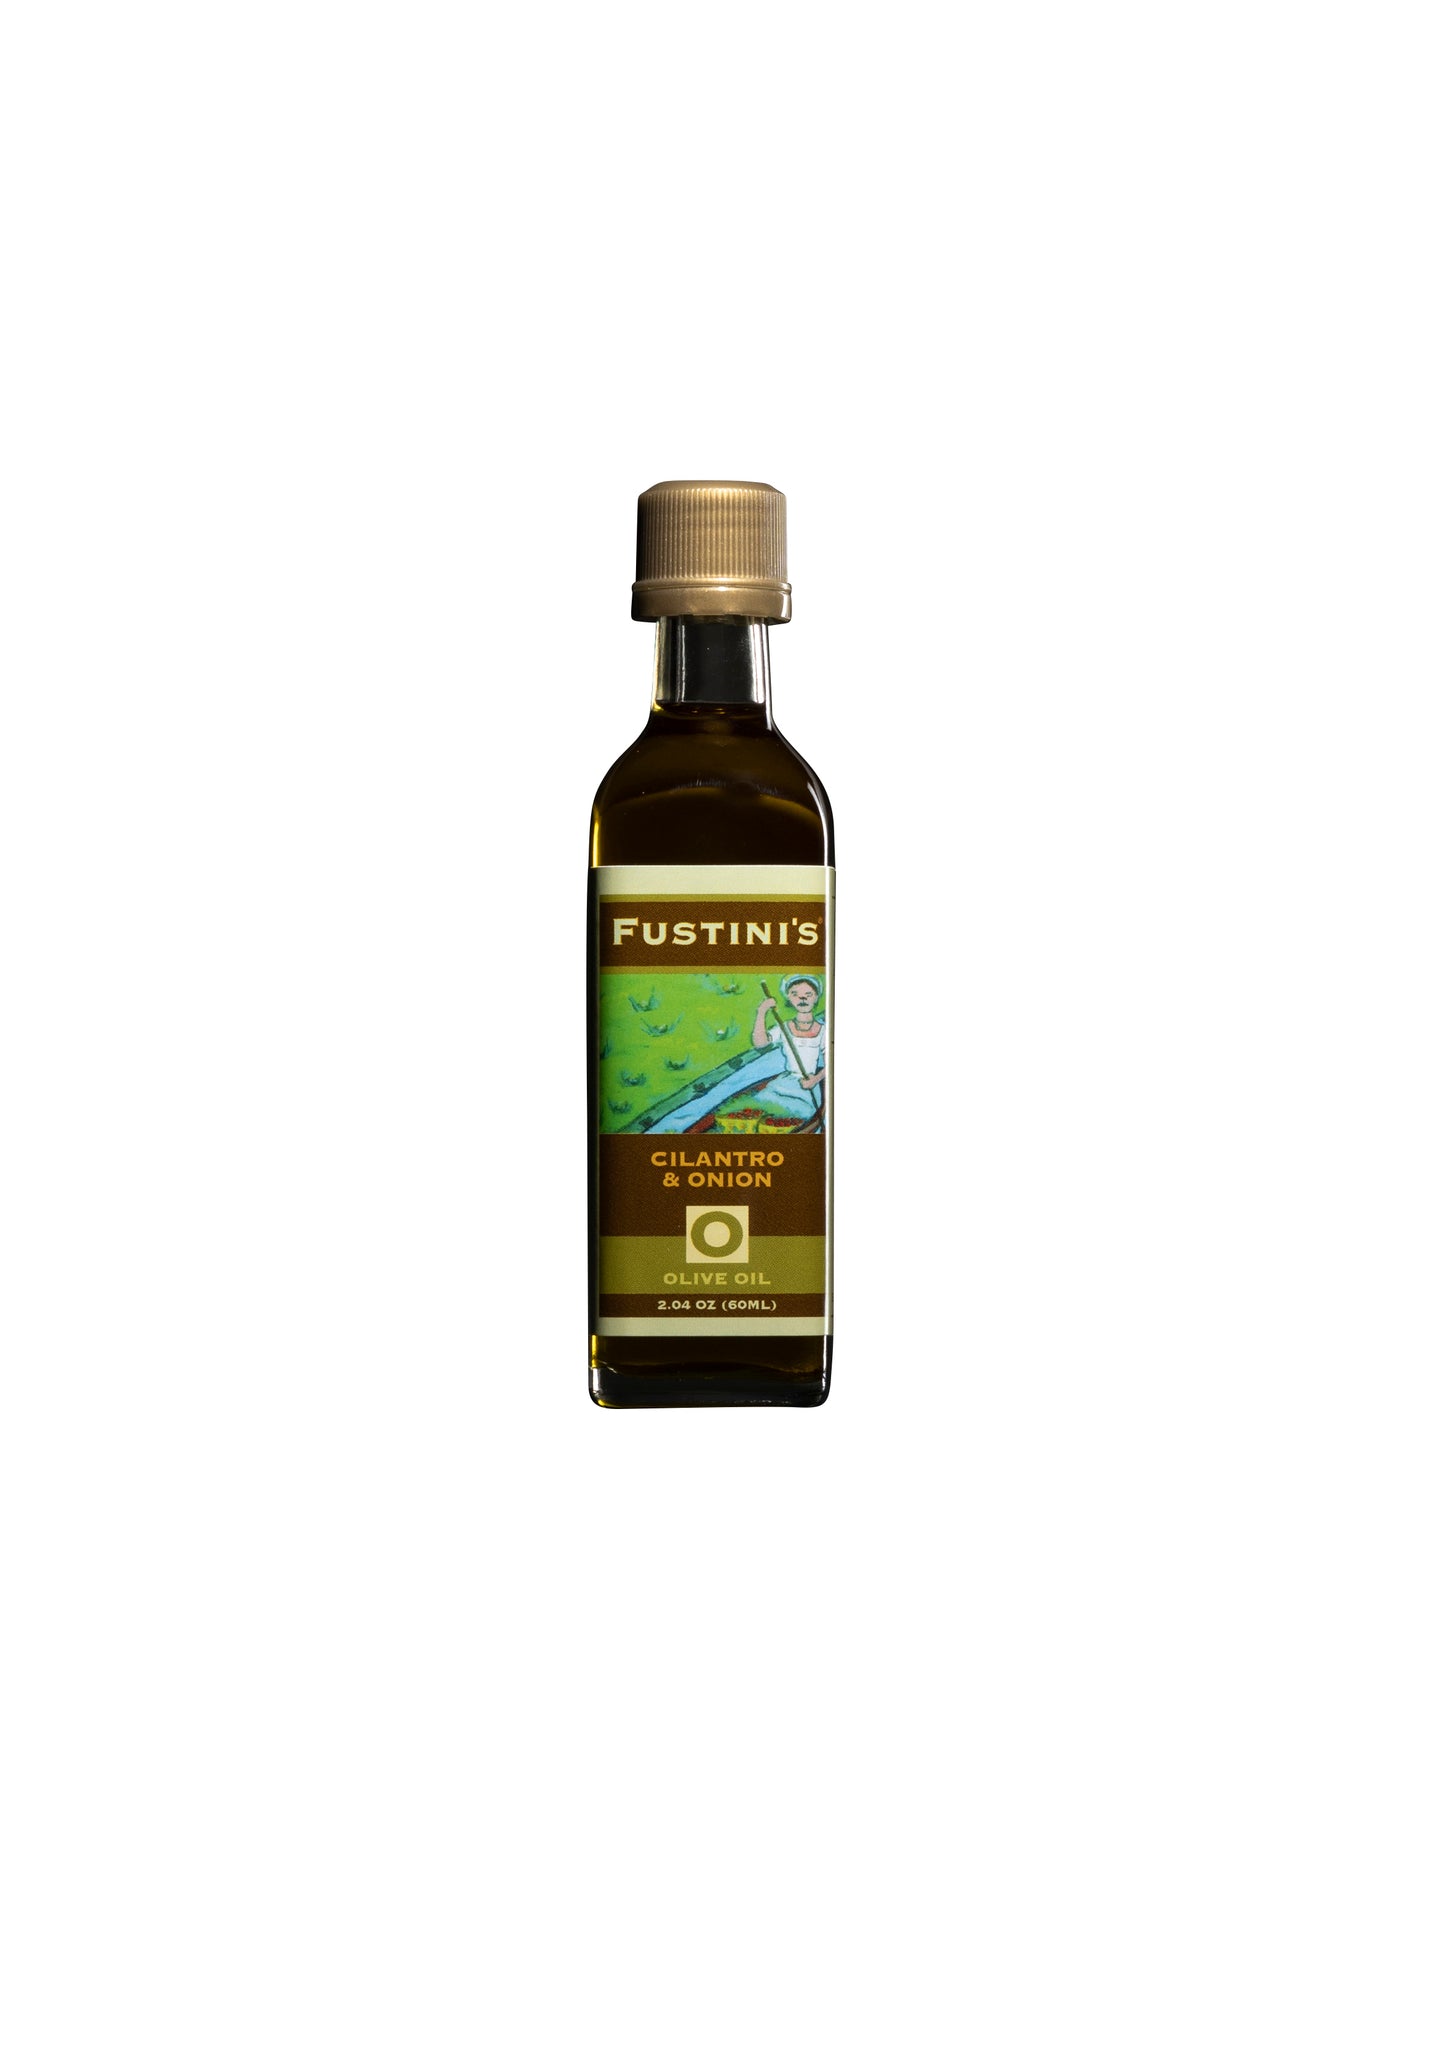 Cilantro and Onion Olive Oil